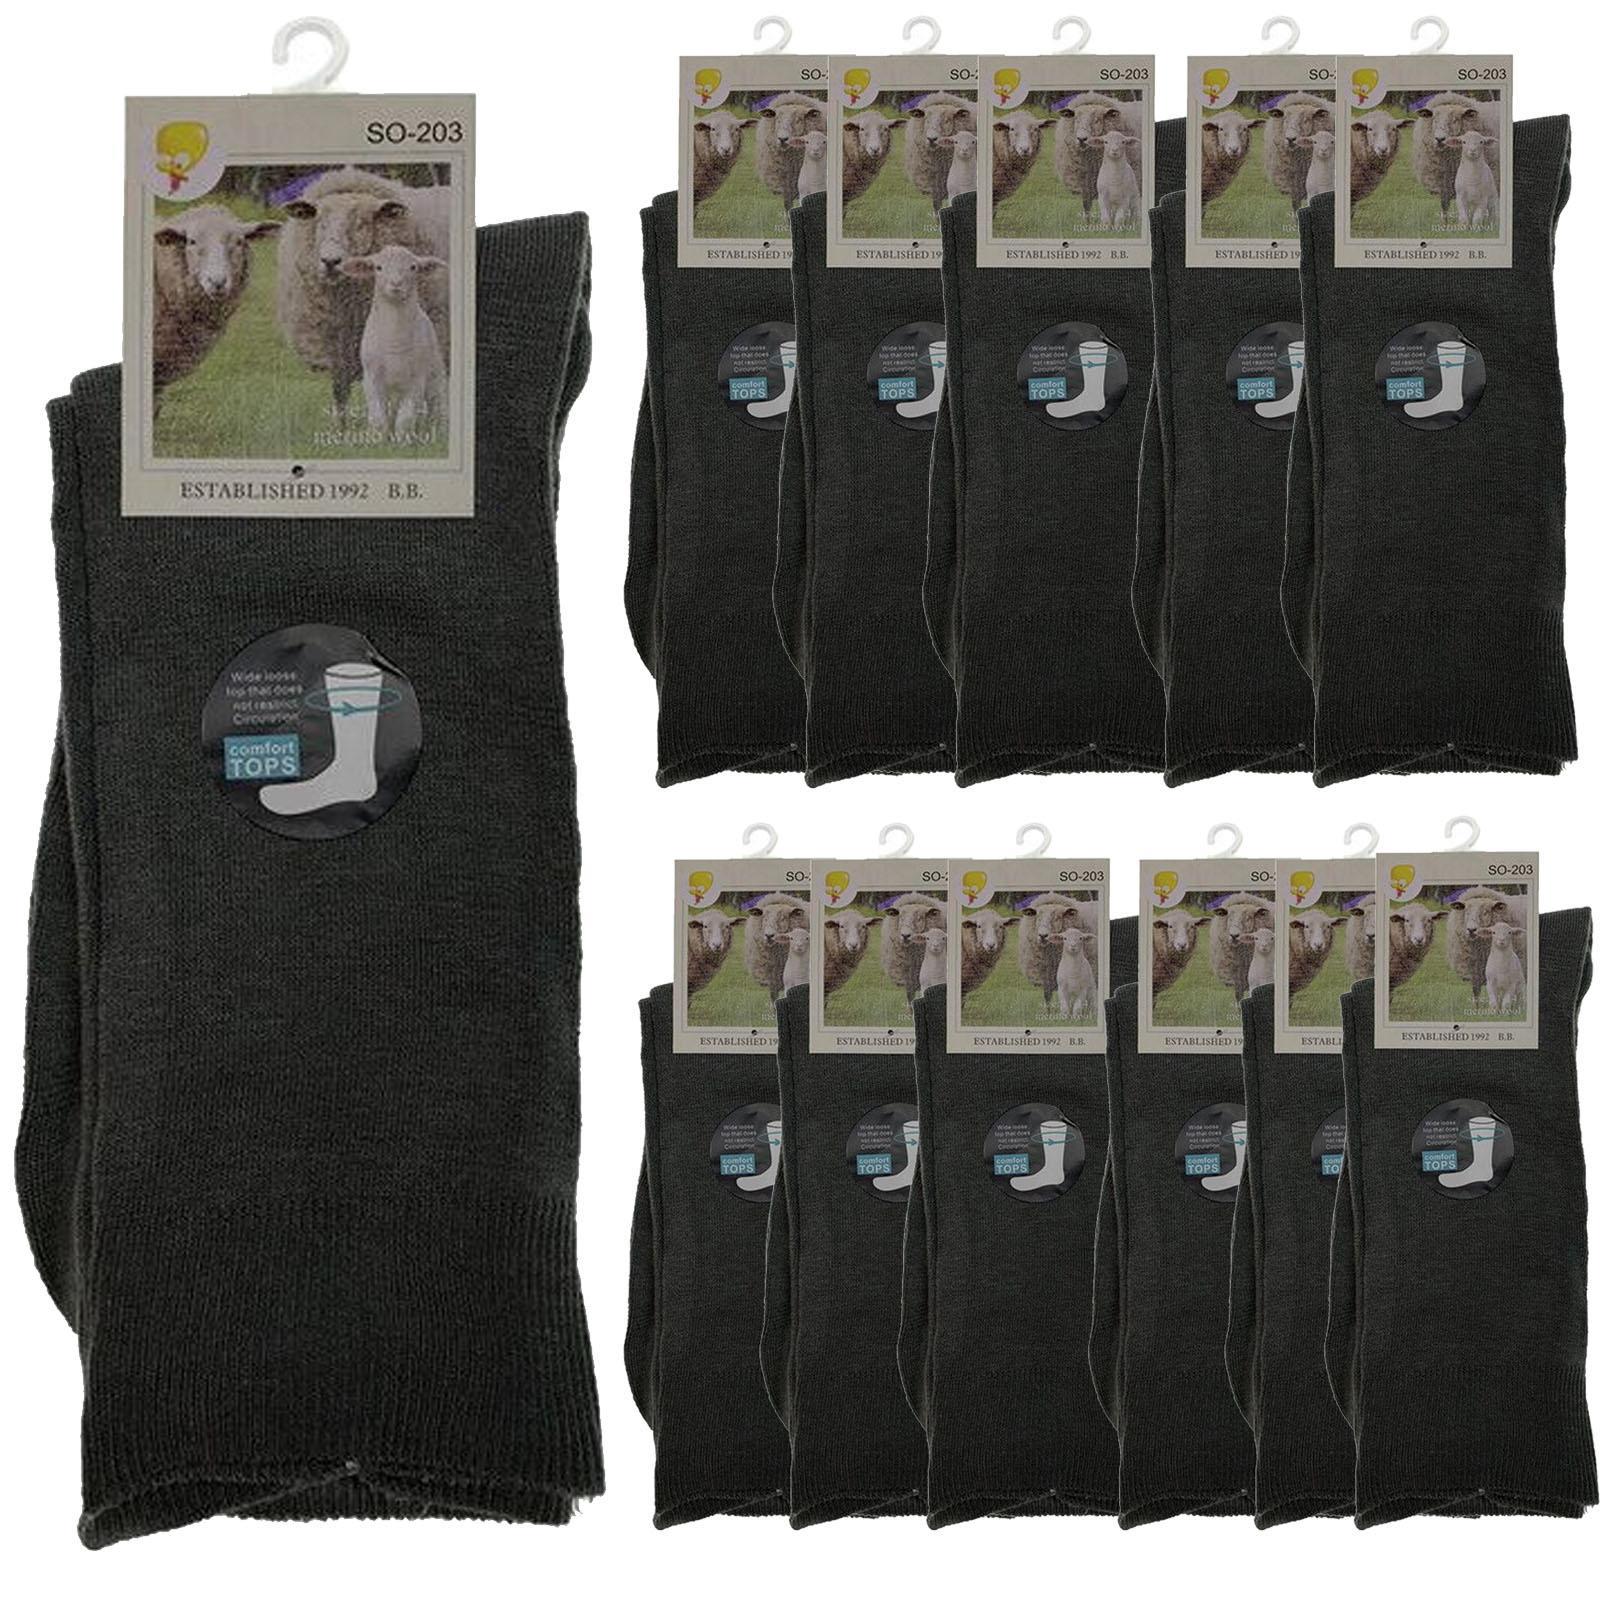 Merino Wool Mens Loose Top Thermal Socks Diabetic Comfort Circulation - 12 Pairs - Grey - 2-8